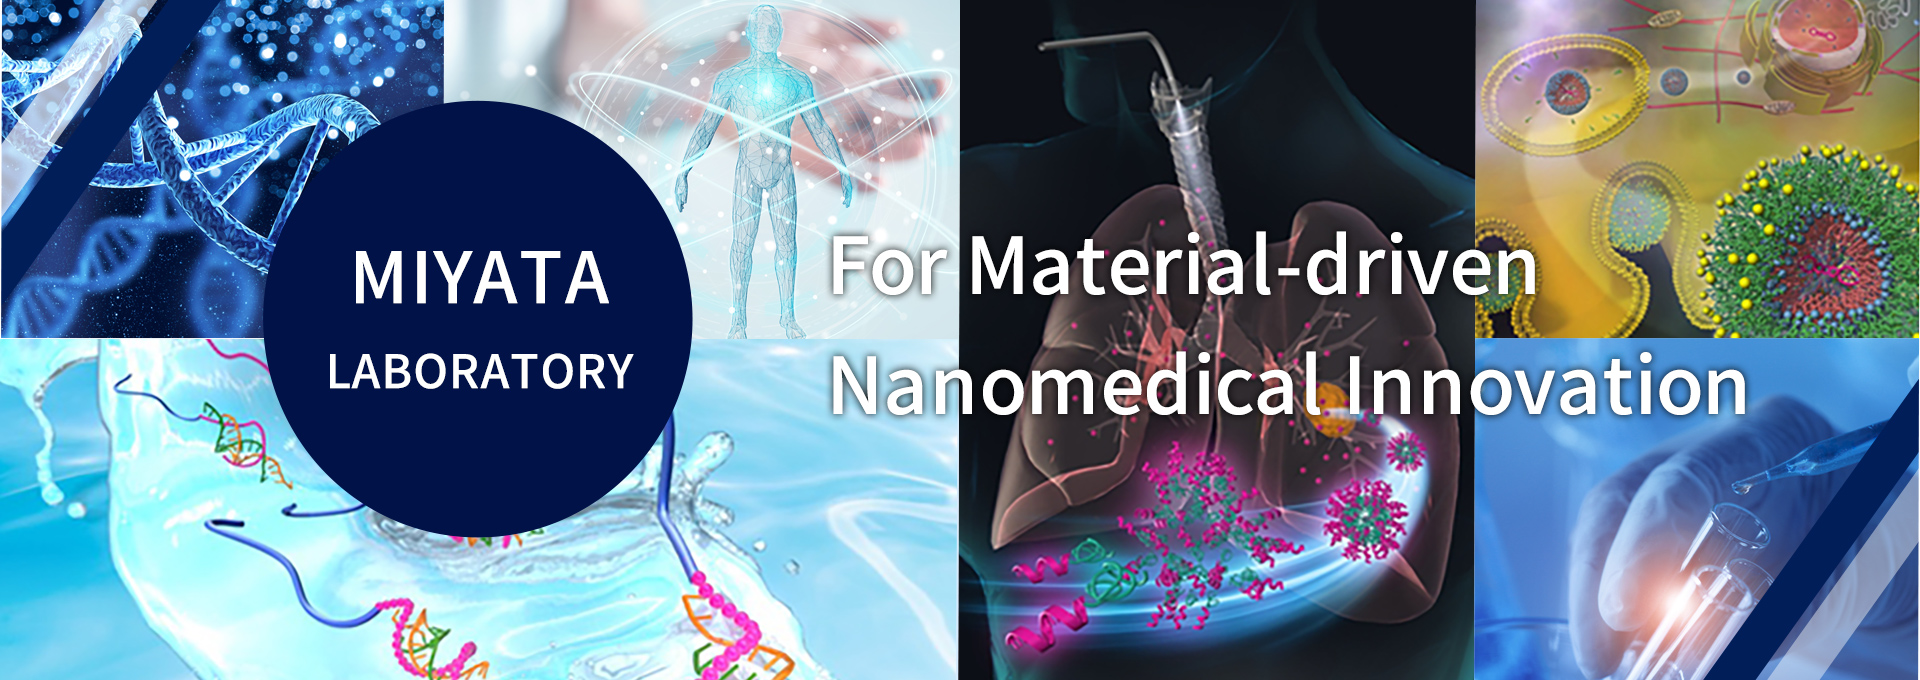 MIYATA LABORATORY For Material-driven Nanomedical Innovation